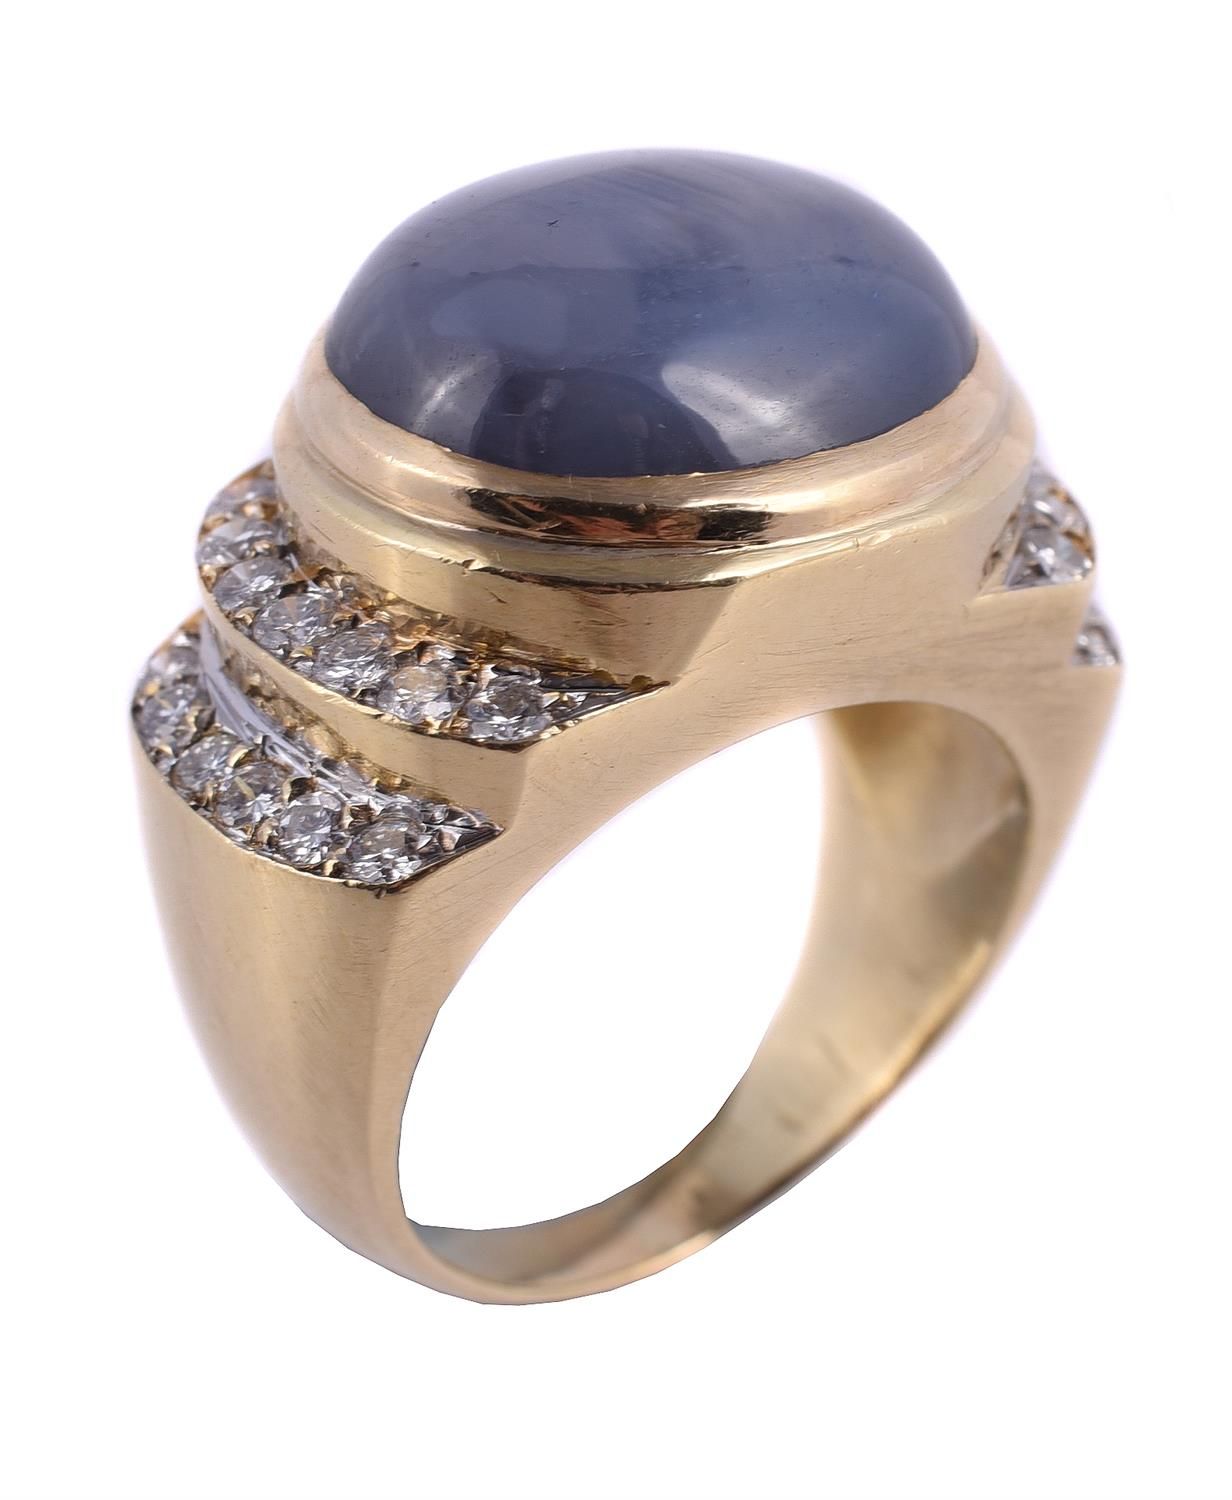 A star sapphire and diamond ring 一枚星形蓝宝石和钻石戒指，夹头镶嵌椭圆形凸圆形星形蓝宝石，肩部镶嵌阶梯式明亮式切割钻石，共重约&hellip;